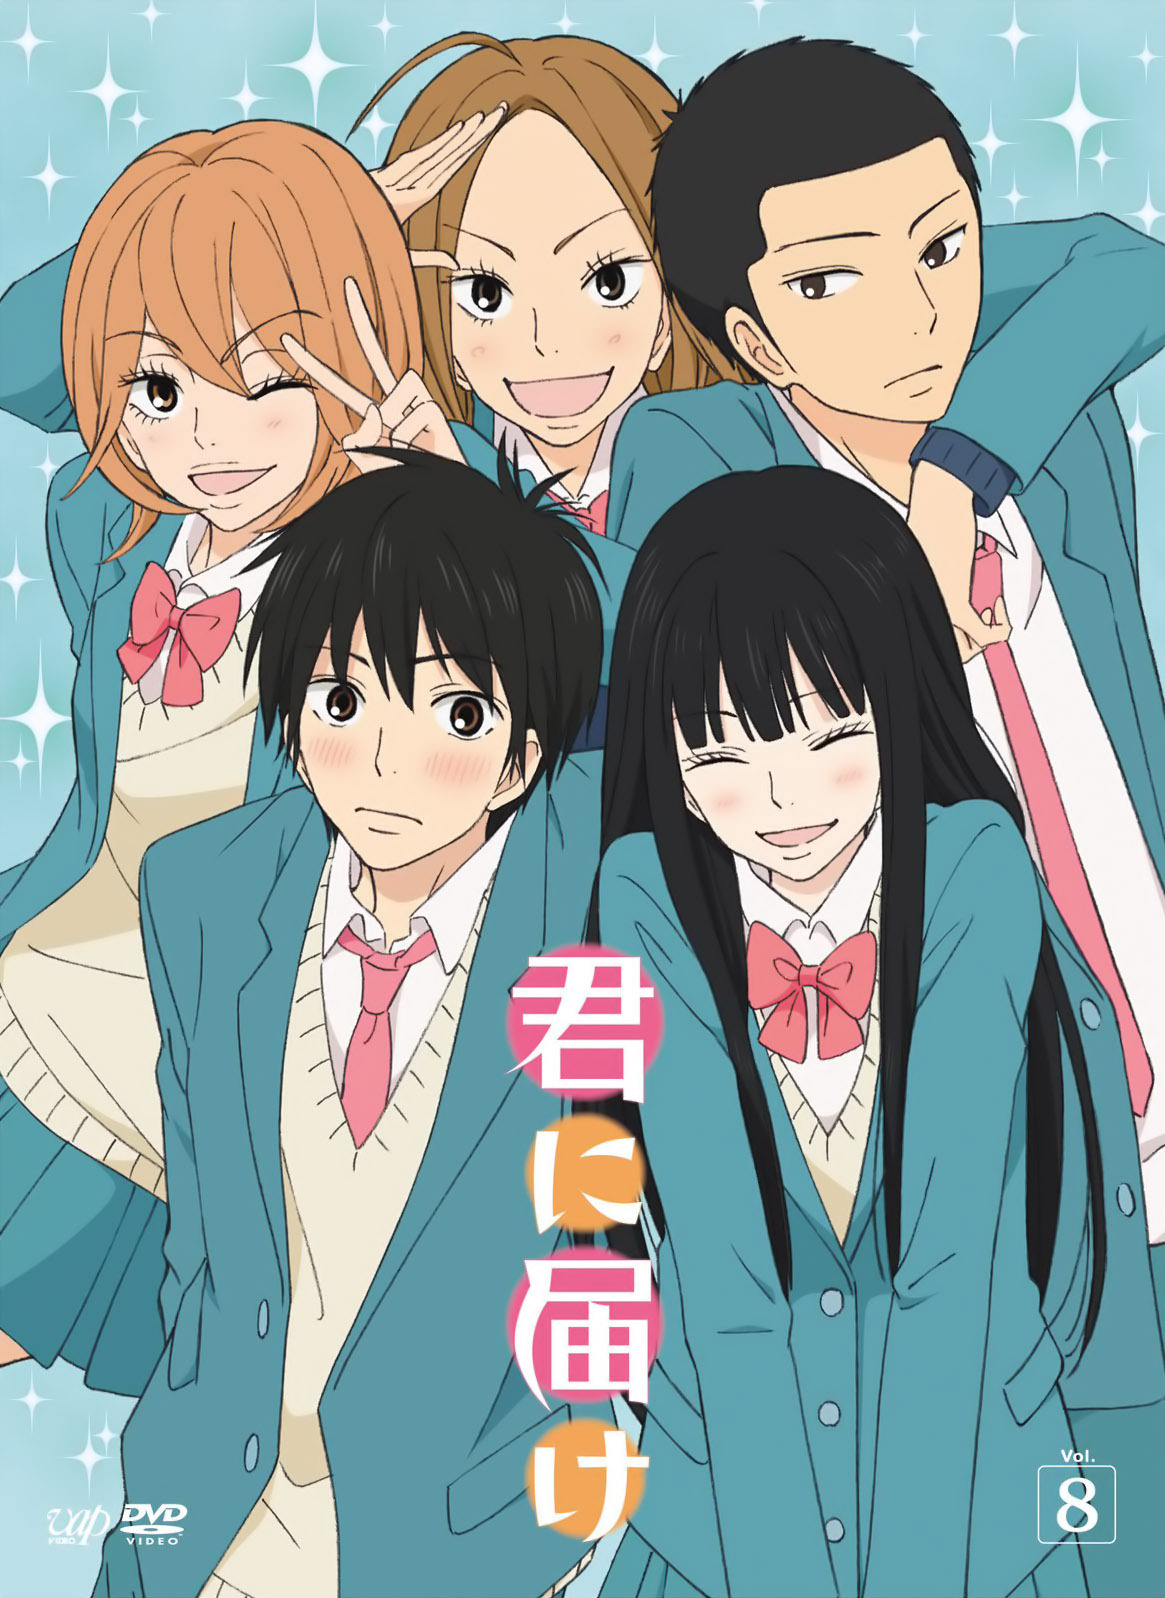 Anime Review: Kakegurui Staffel 1 - House of Animanga